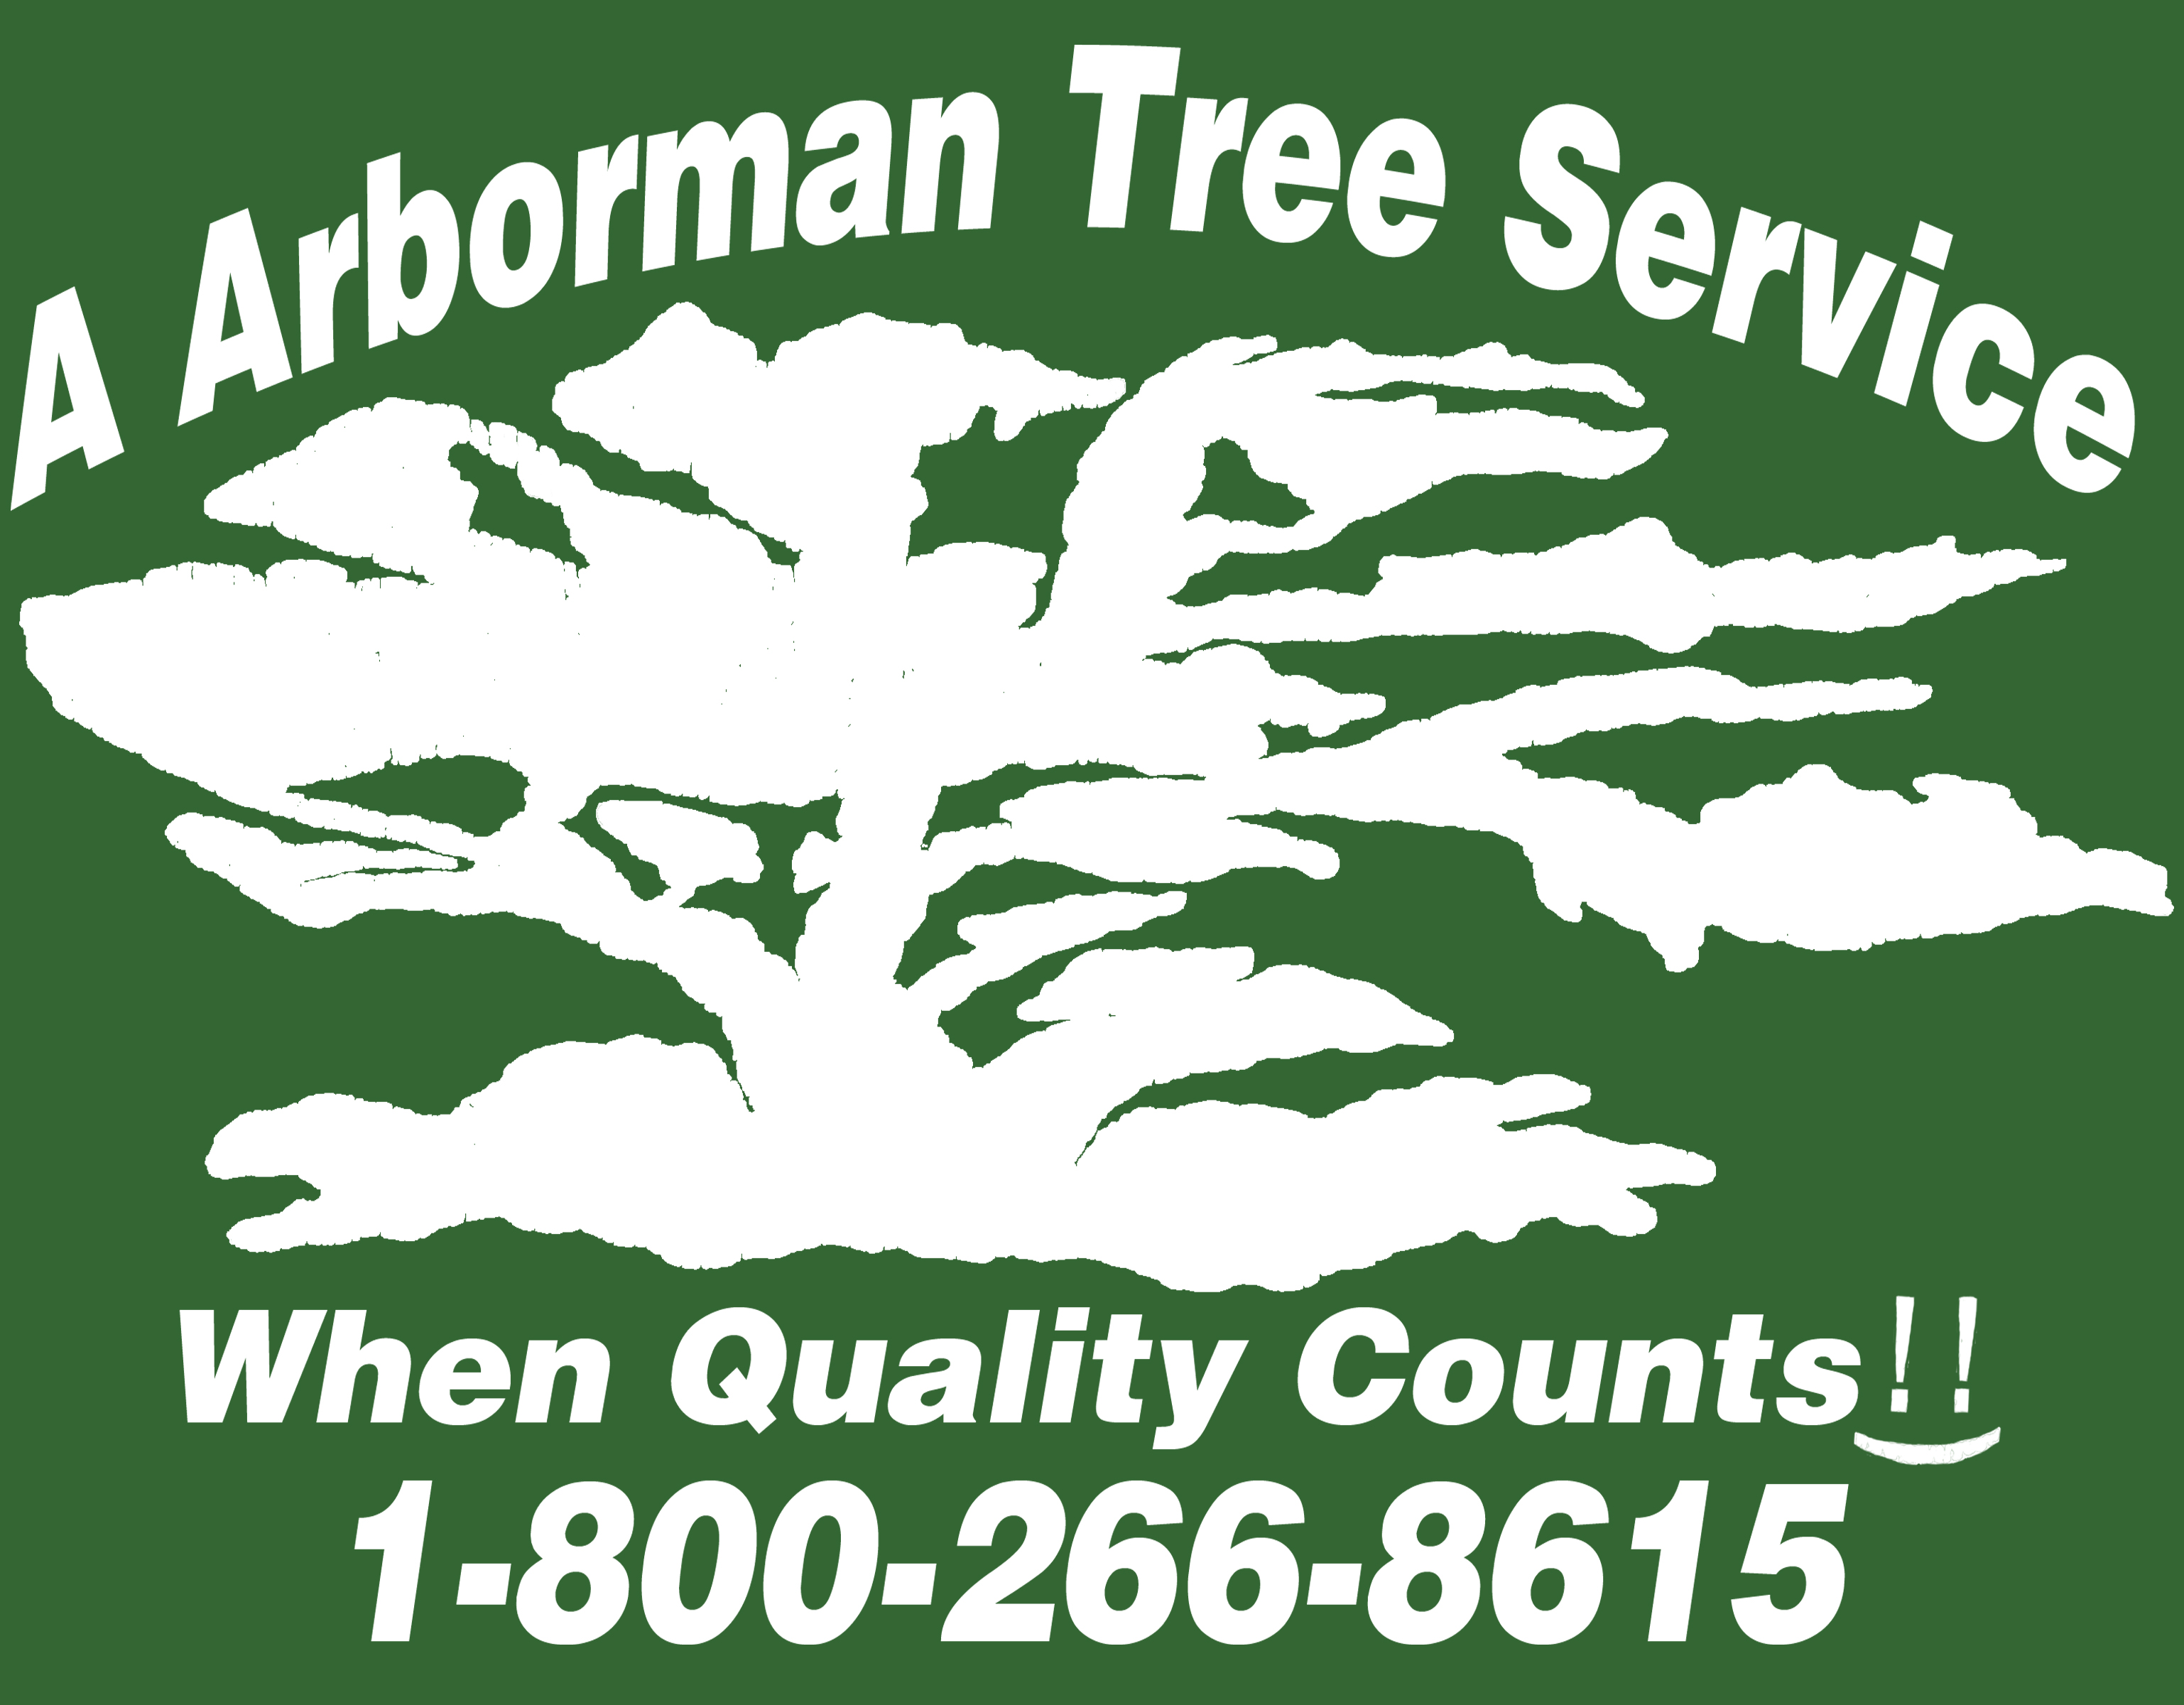 A Arborman Tree Service